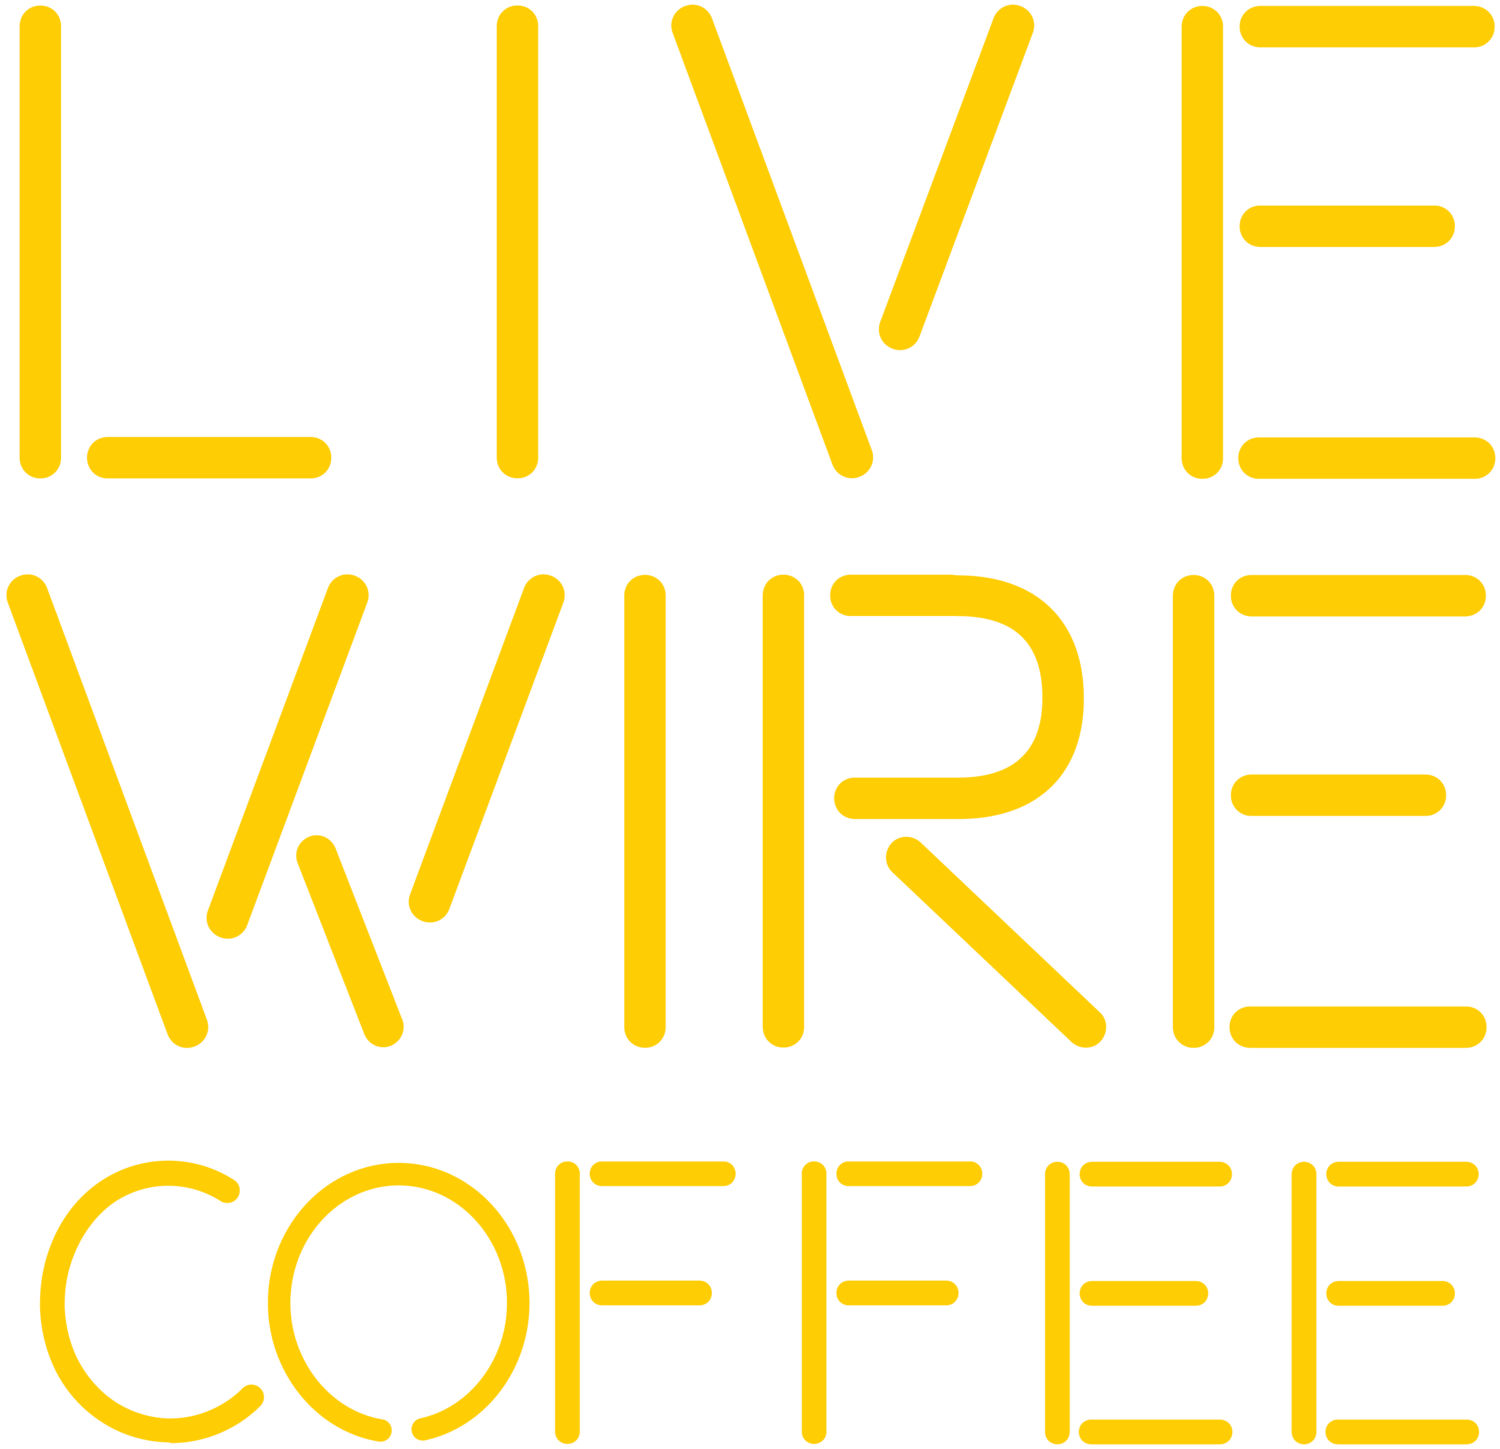 Atlanta Coffee Carts | LiveWire Coffee 